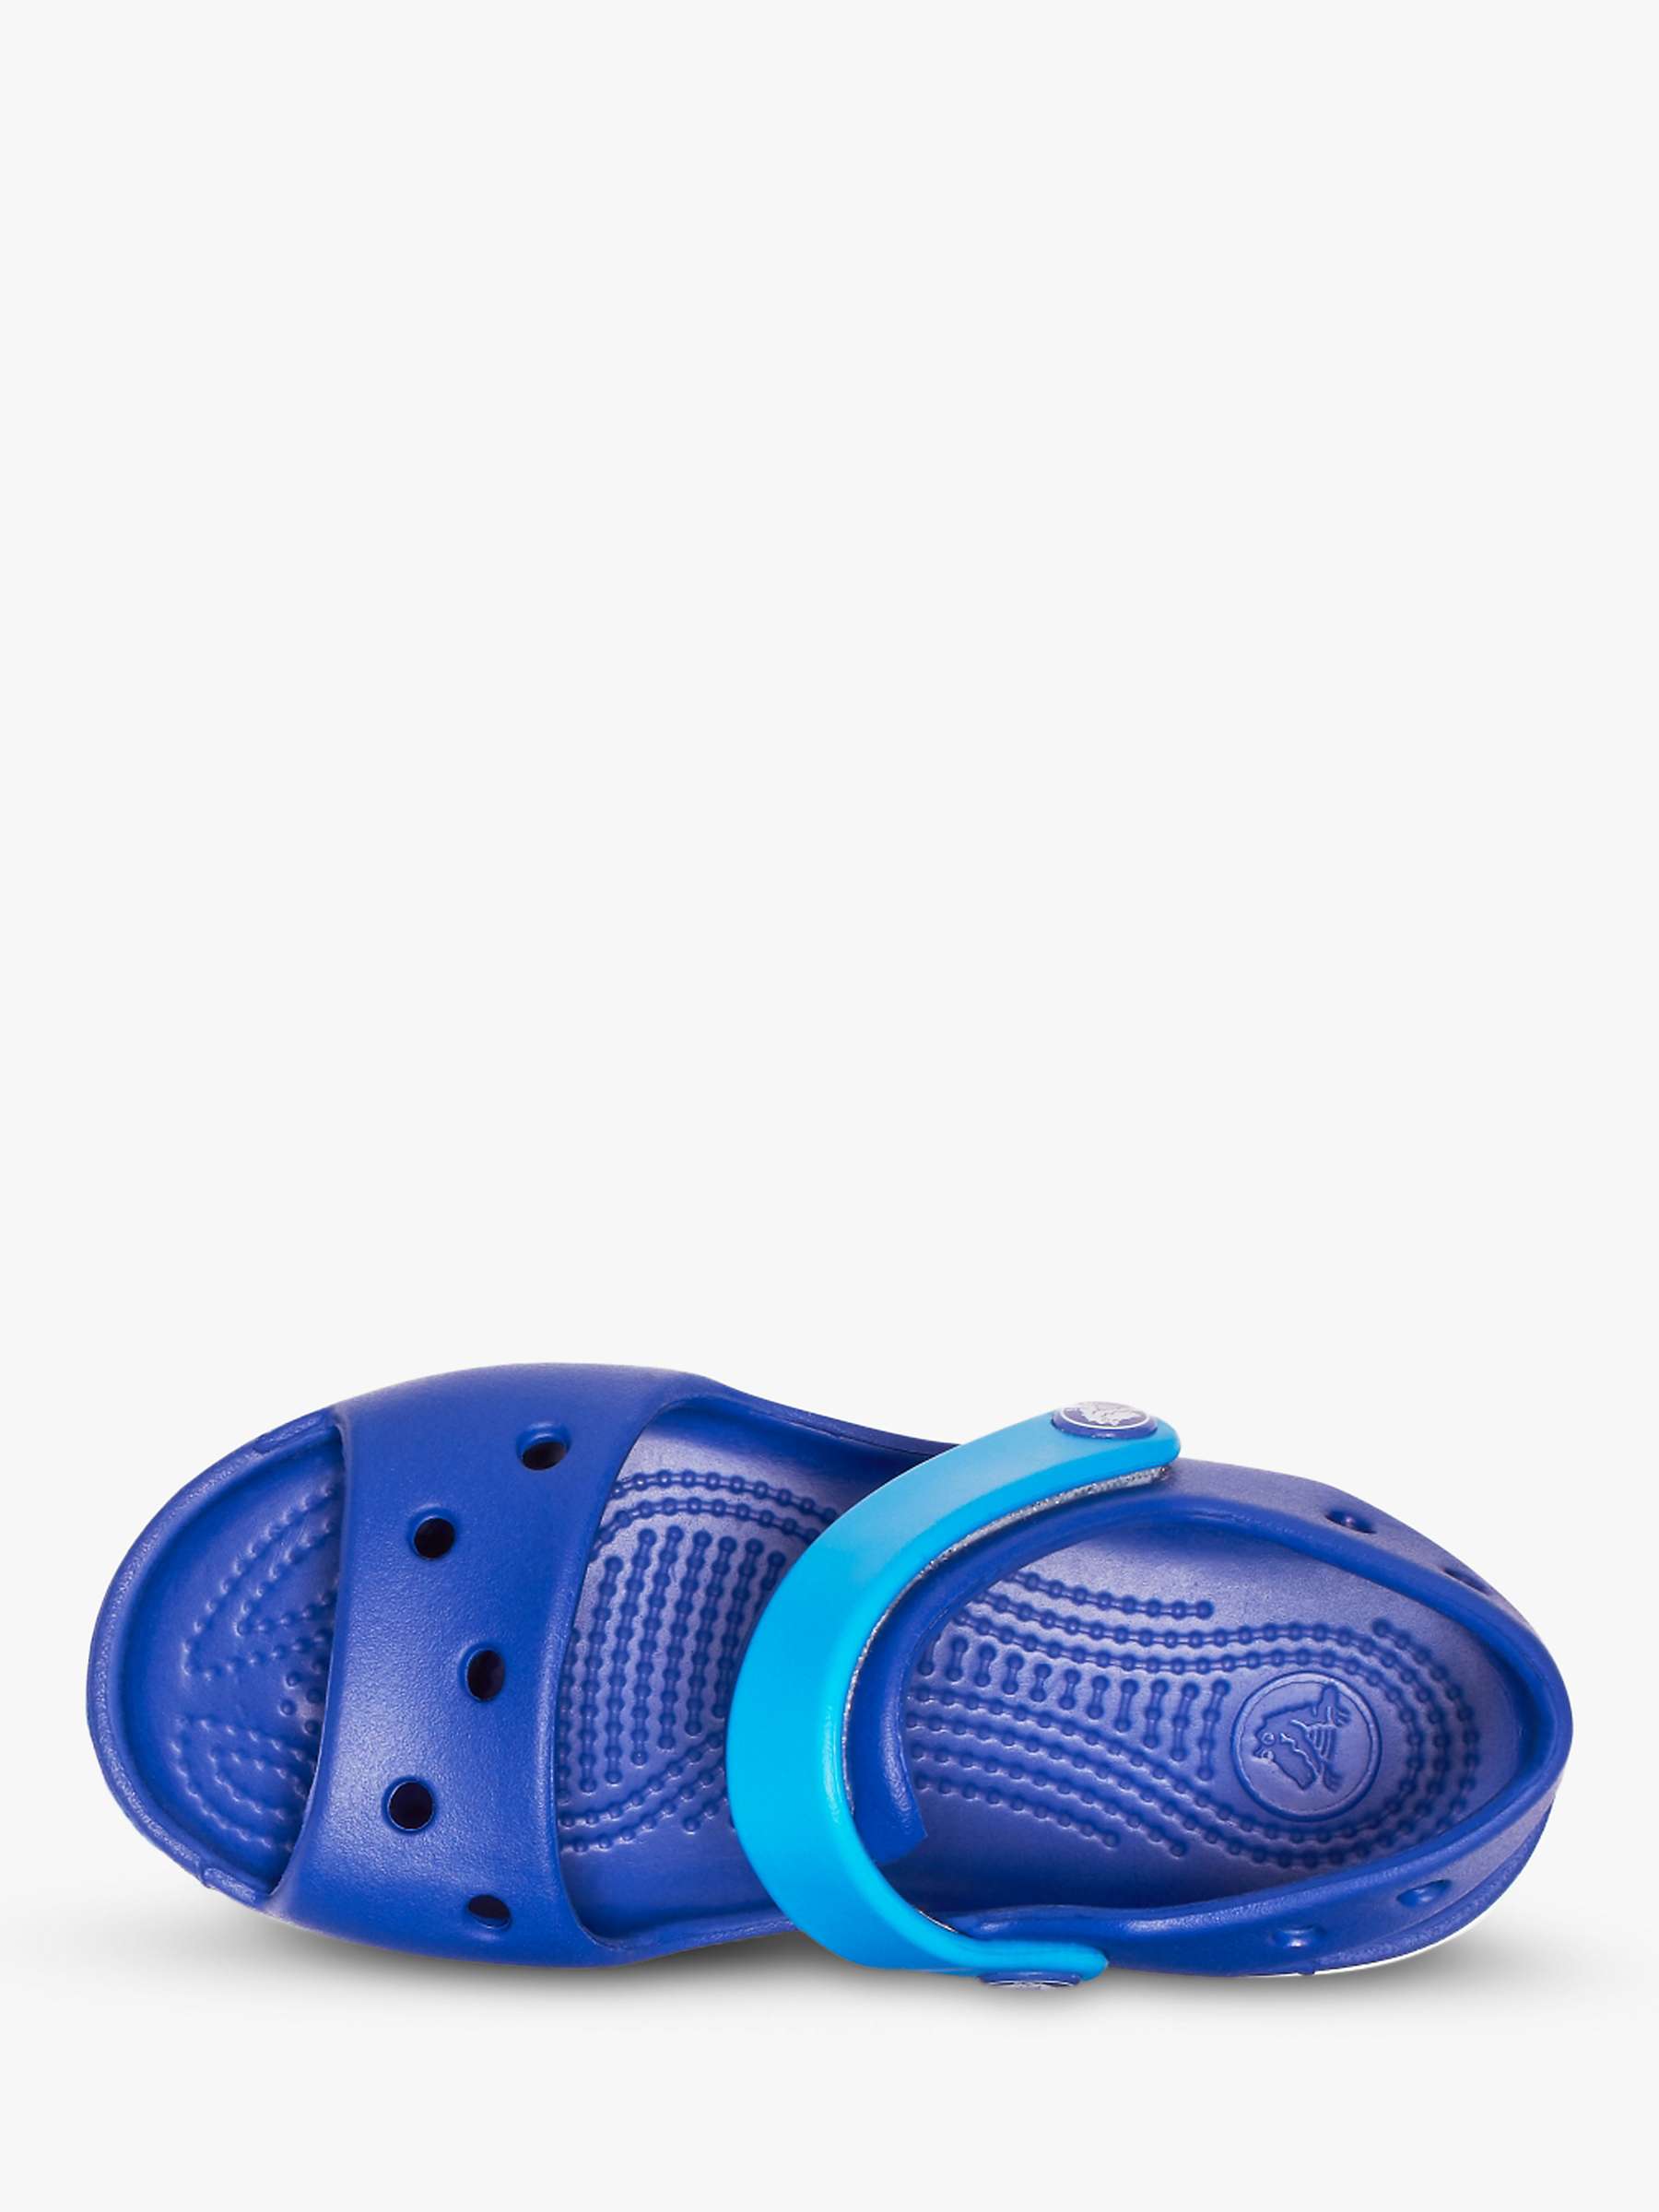 Buy Crocs Kids' Crocband Sandals Online at johnlewis.com